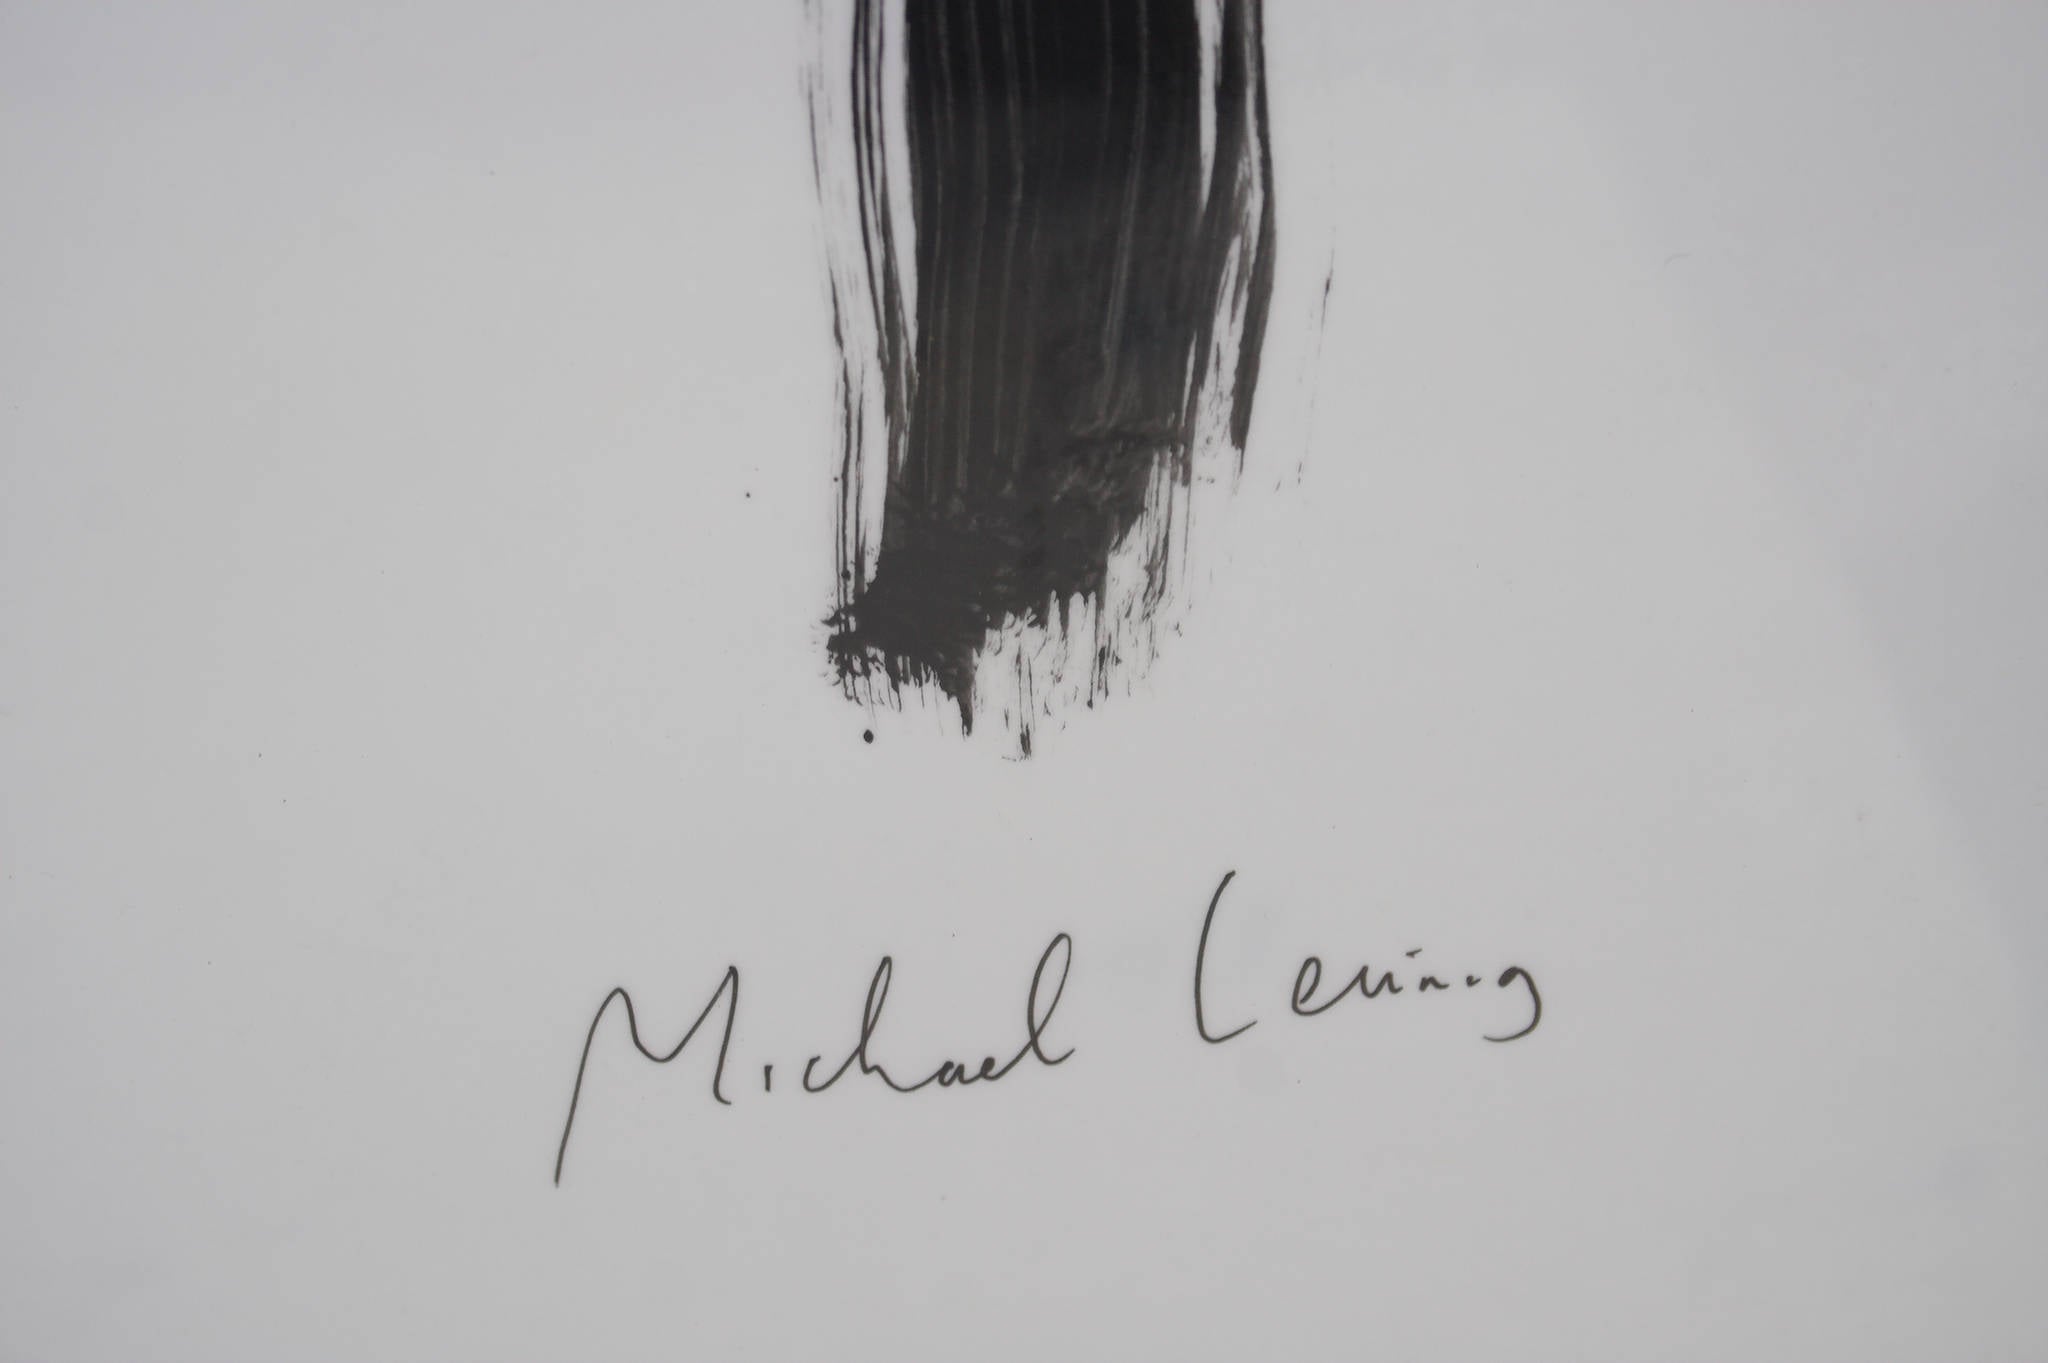 Michael Leunig 'Untitled (Vasco Pyjama's Fallen Tear)'